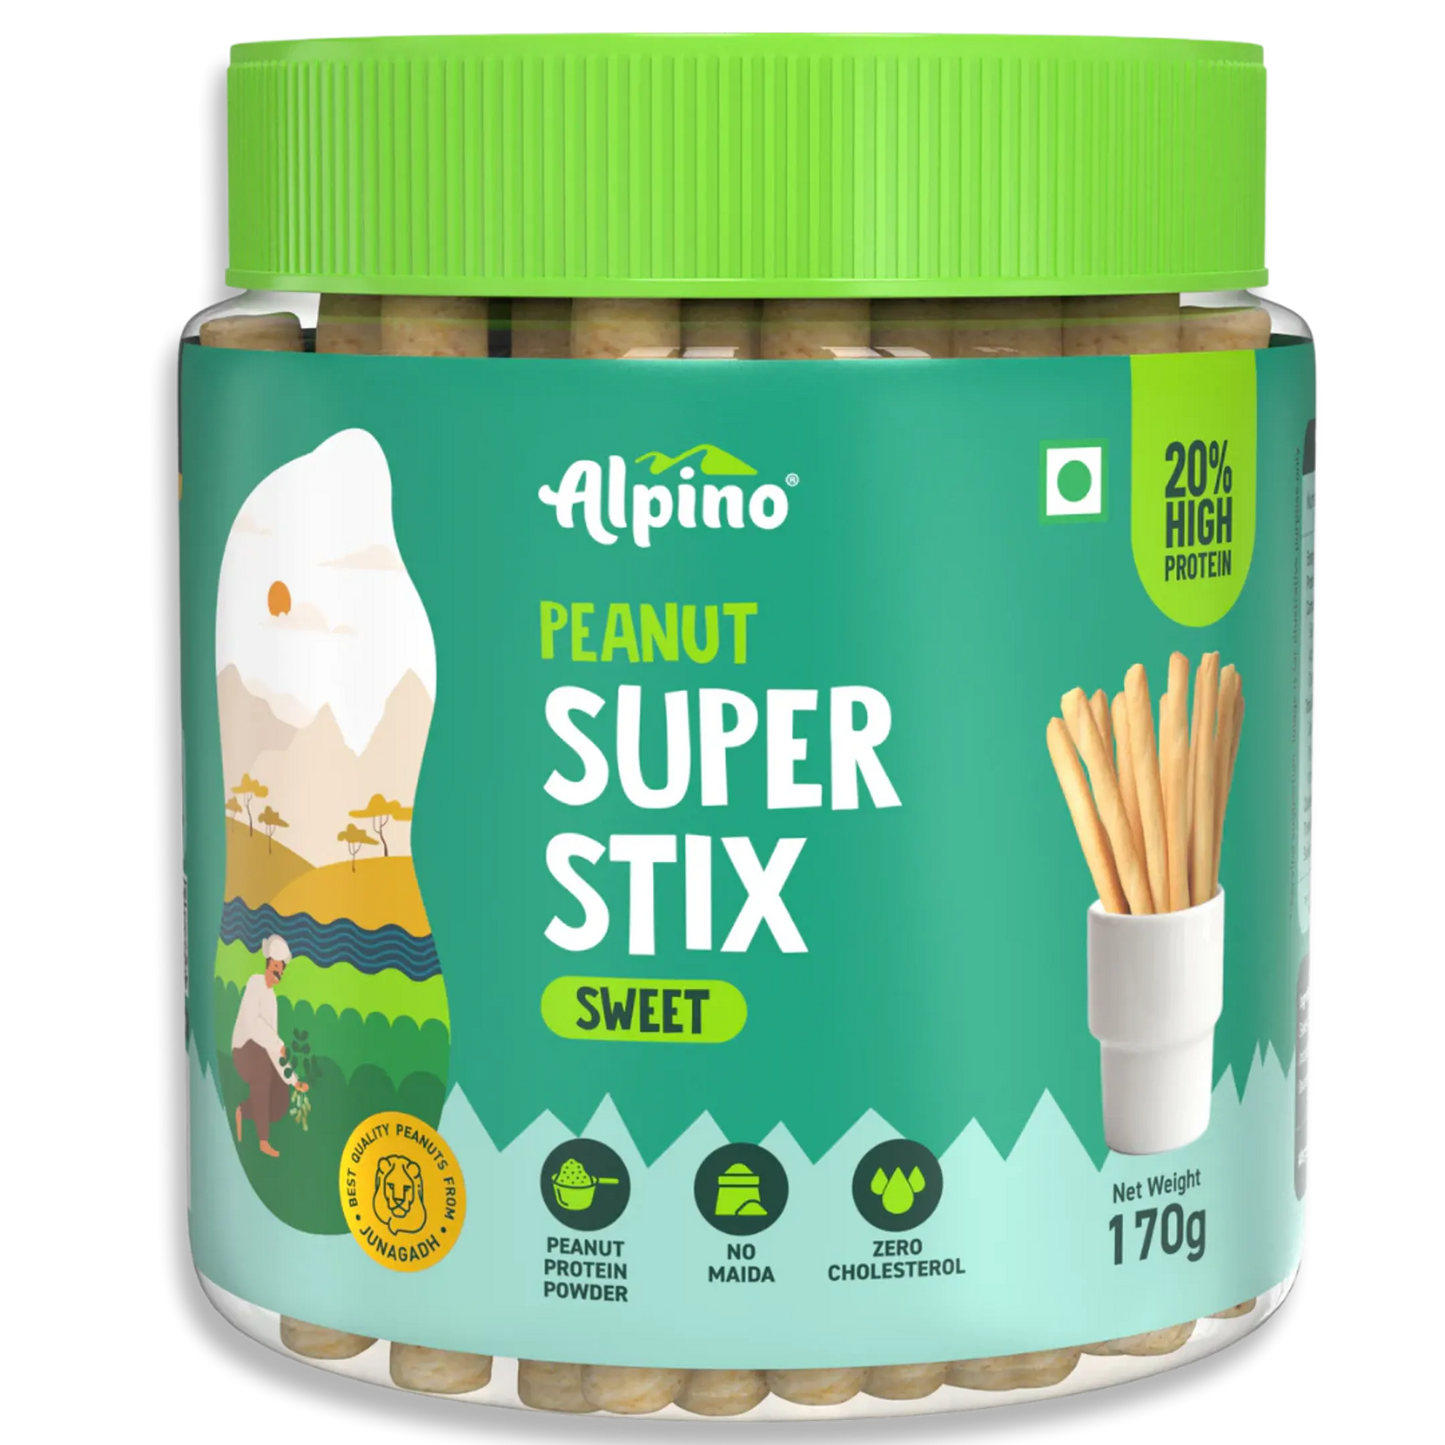 Alpino Peanut Super Stix Sweet